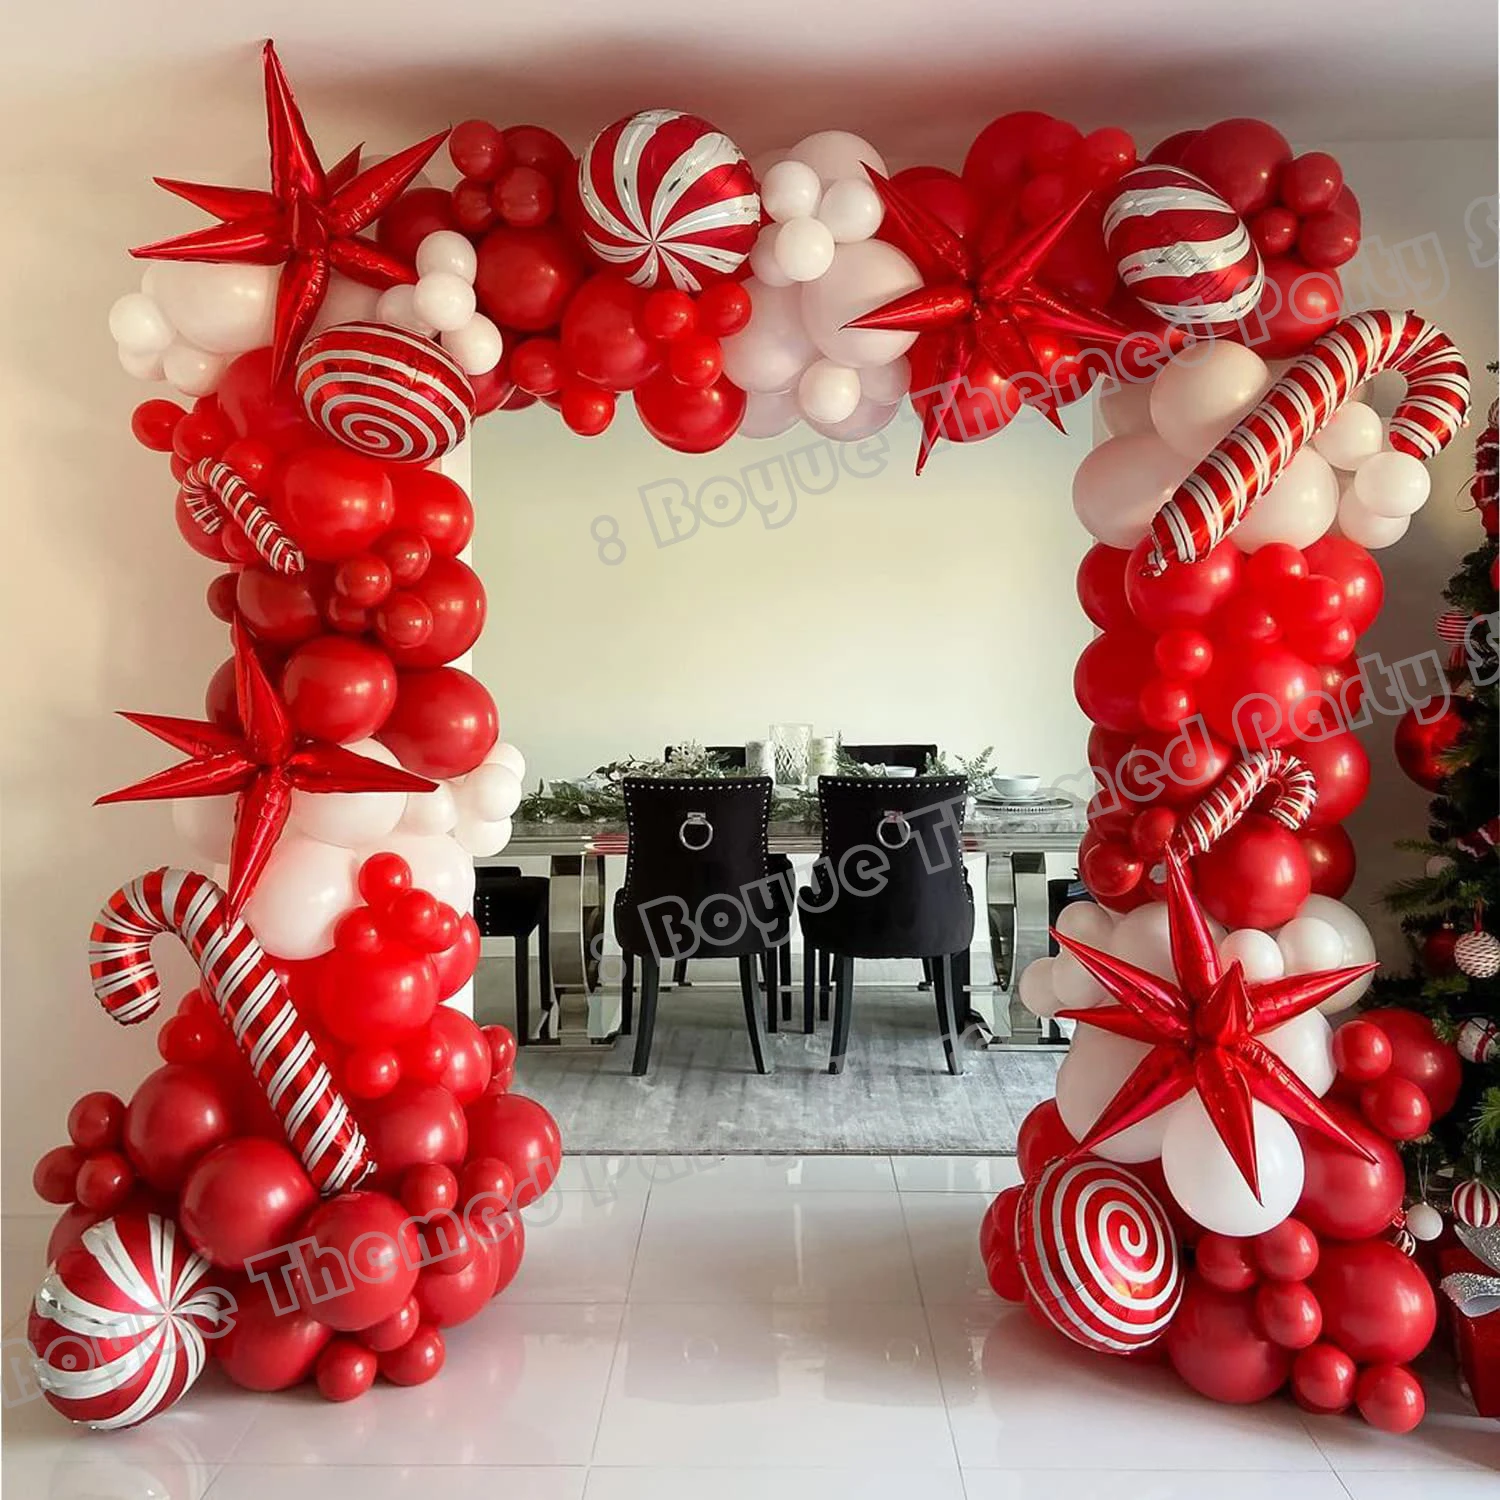 Набор рождественской гирлянды из воздушных шаров с рождественскими красно-белыми тростниковыми конфетными шариками, воздушными шарами с красной звездой для украшения рождественской вечеринки